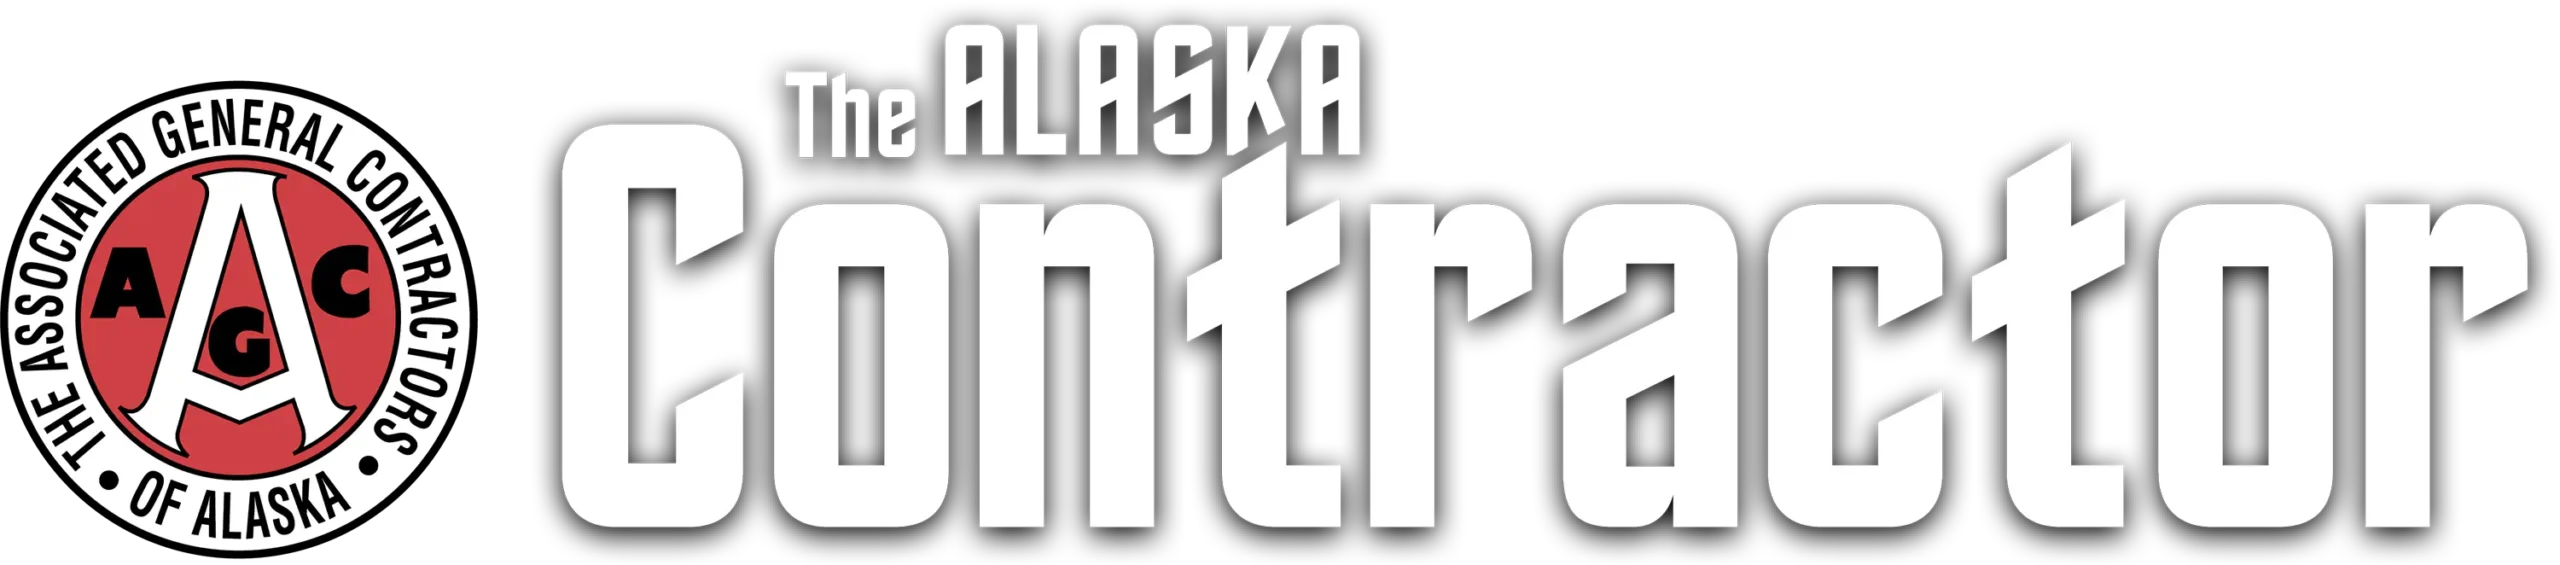 The Alaska Contractor logo